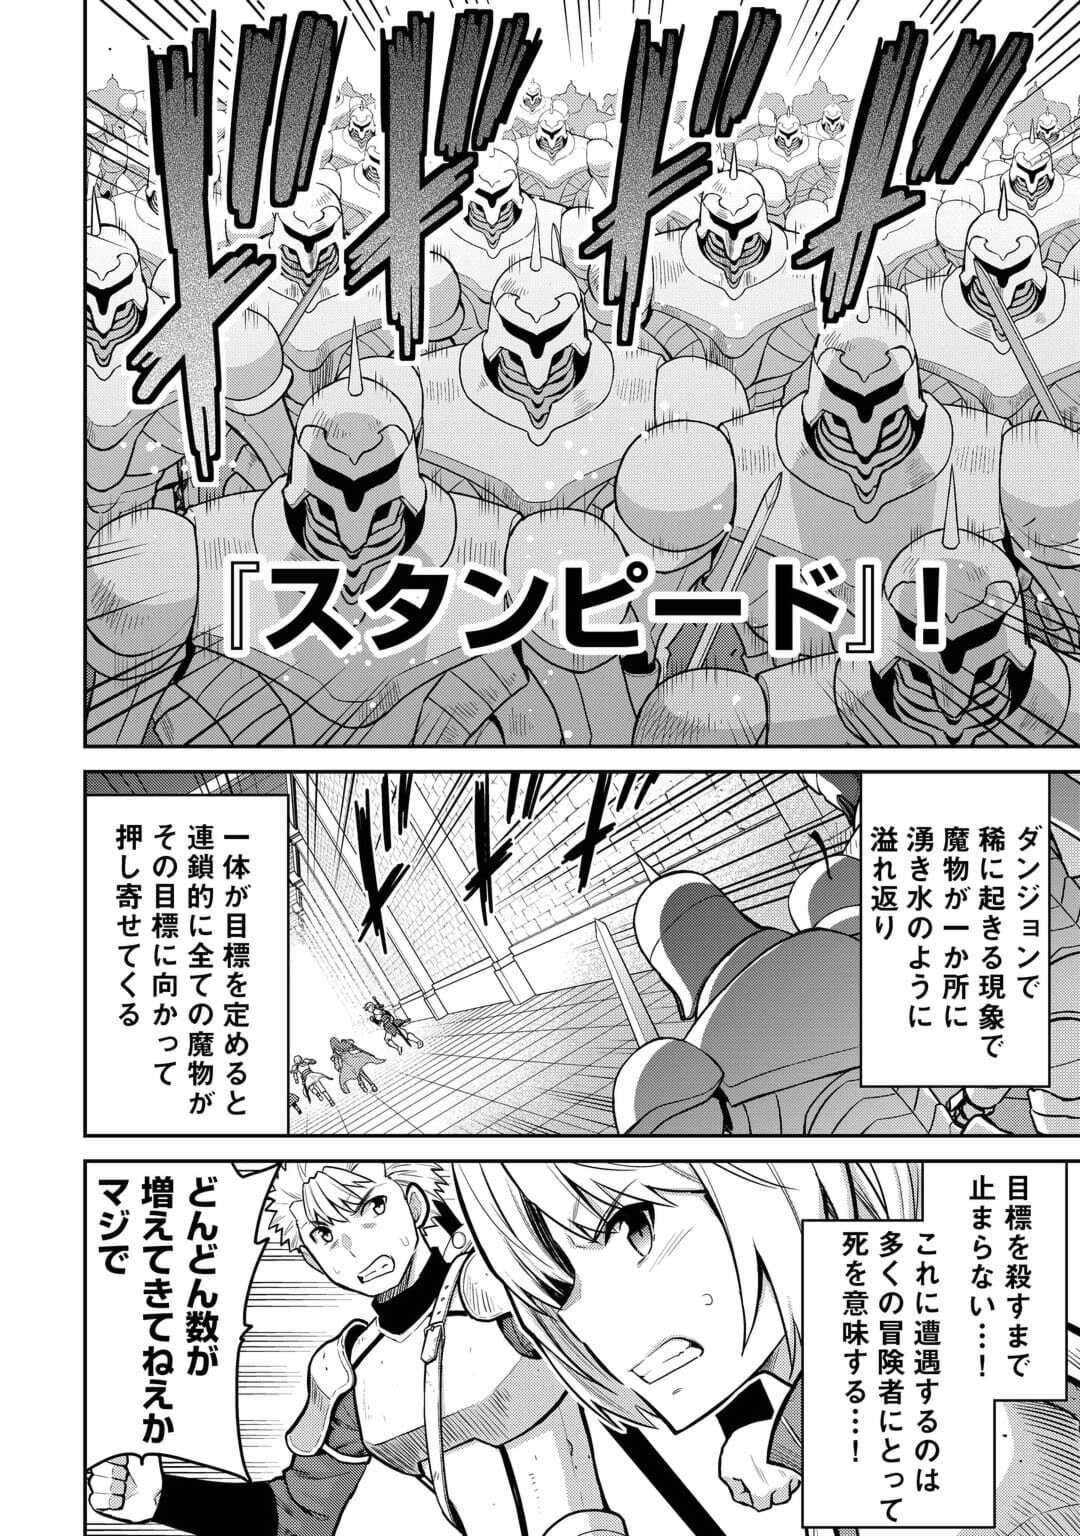 Saikyou no Shokugyou wa Yuusha demo Kenja demo naku Kanteishi (Kari) rashii desu yo? - Chapter 54 - Page 2